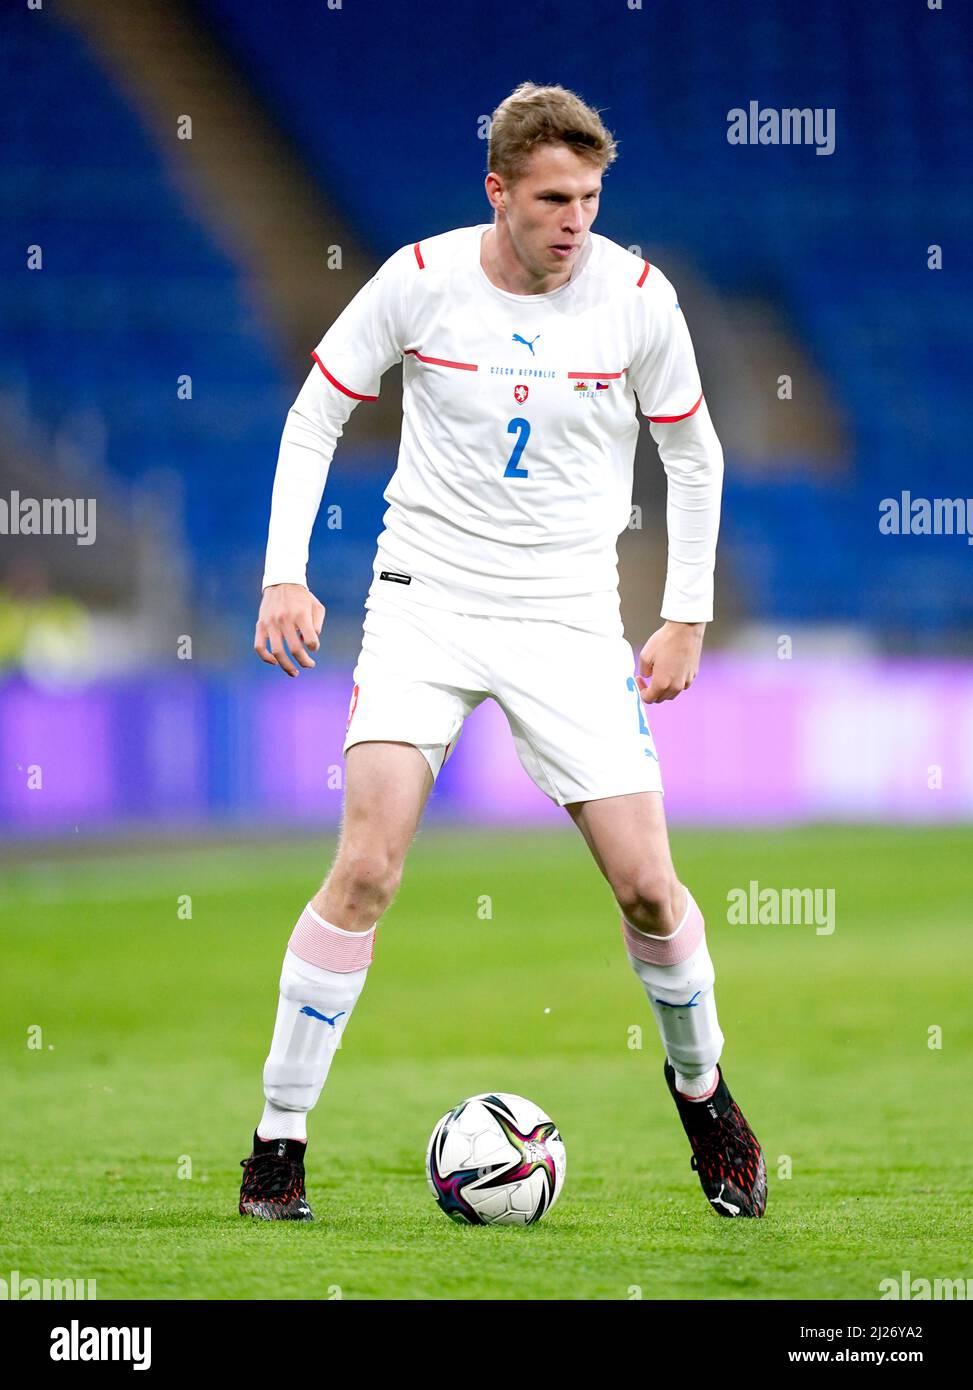 David Zima, de la República Checa, durante el partido amistoso internacional en el Cardiff City Stadium, Cardiff. Fecha de la foto: Martes 29 de marzo de 2022. Foto de stock